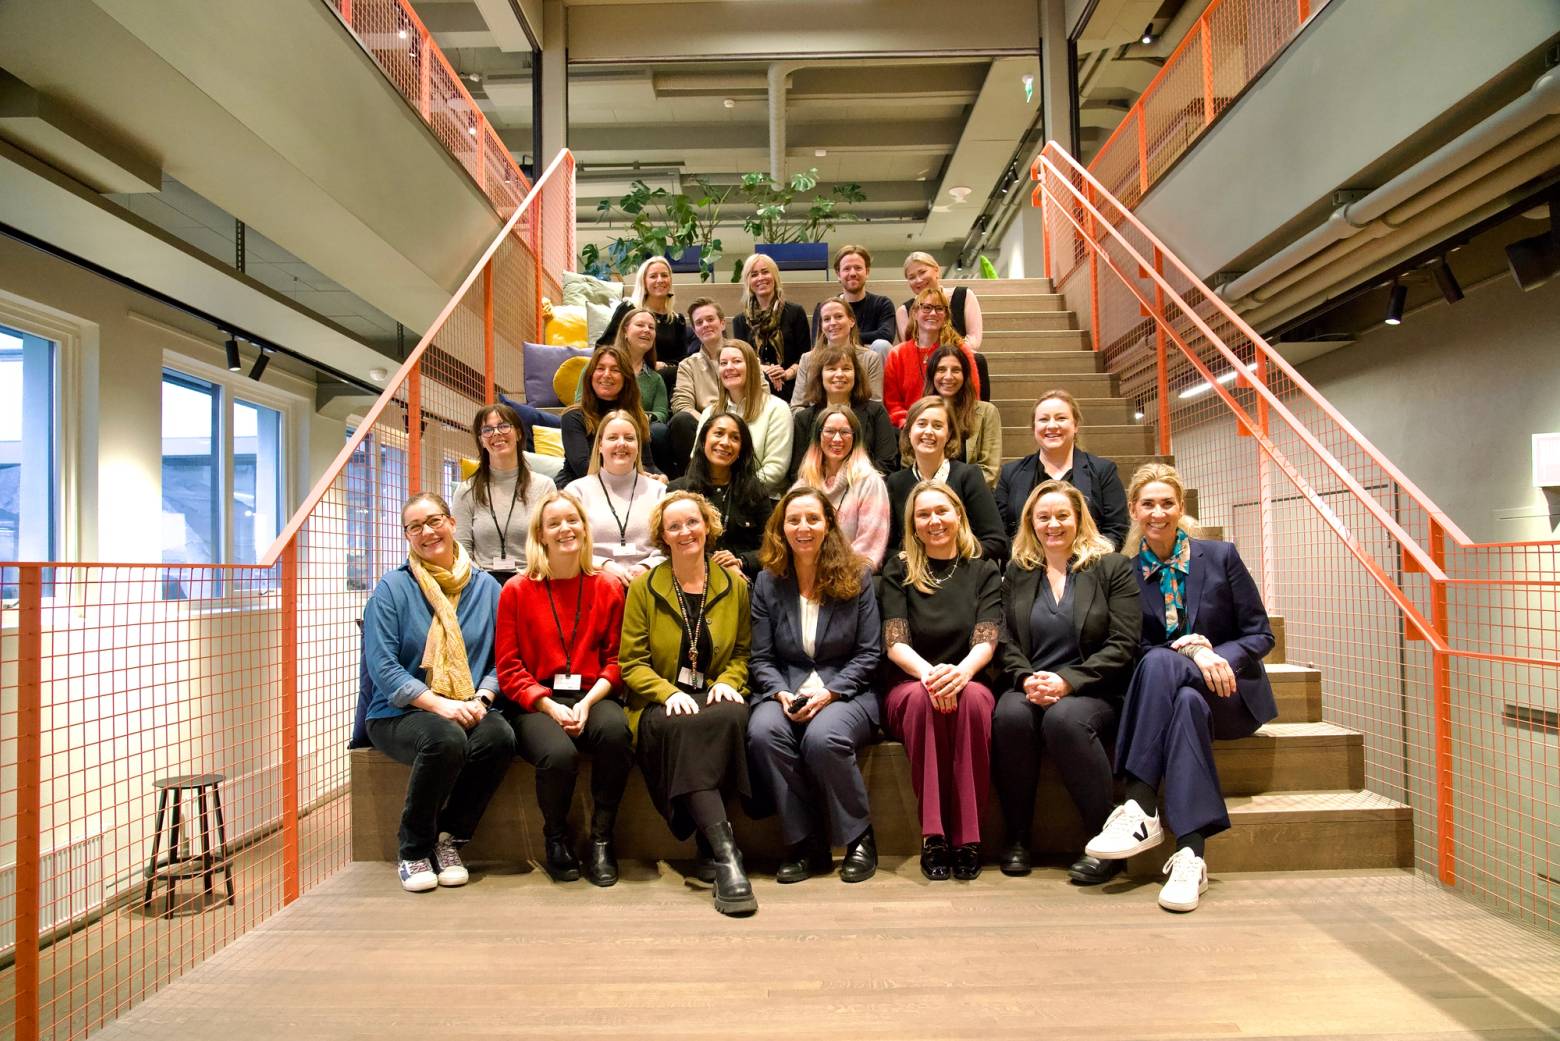 Mer enn 20 kunnskapsrike mennesker fra akademia, politikk og næringsliv deltok i innspillsmøtet som ble arrangert i regi av IKT-Norge